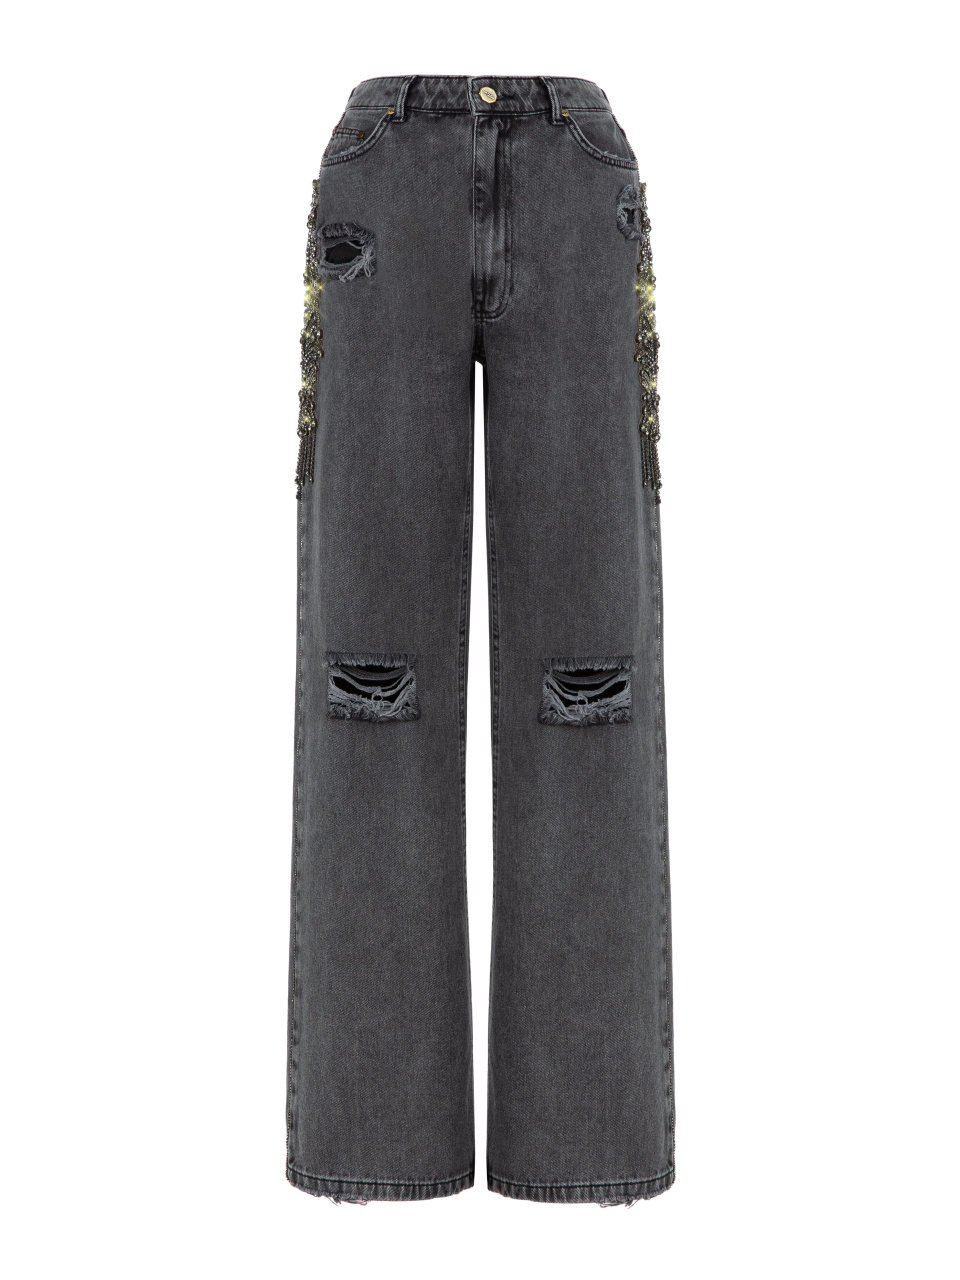 Расклешенные темно-серые джинсы с ручной вышивкой кристаллами, 1